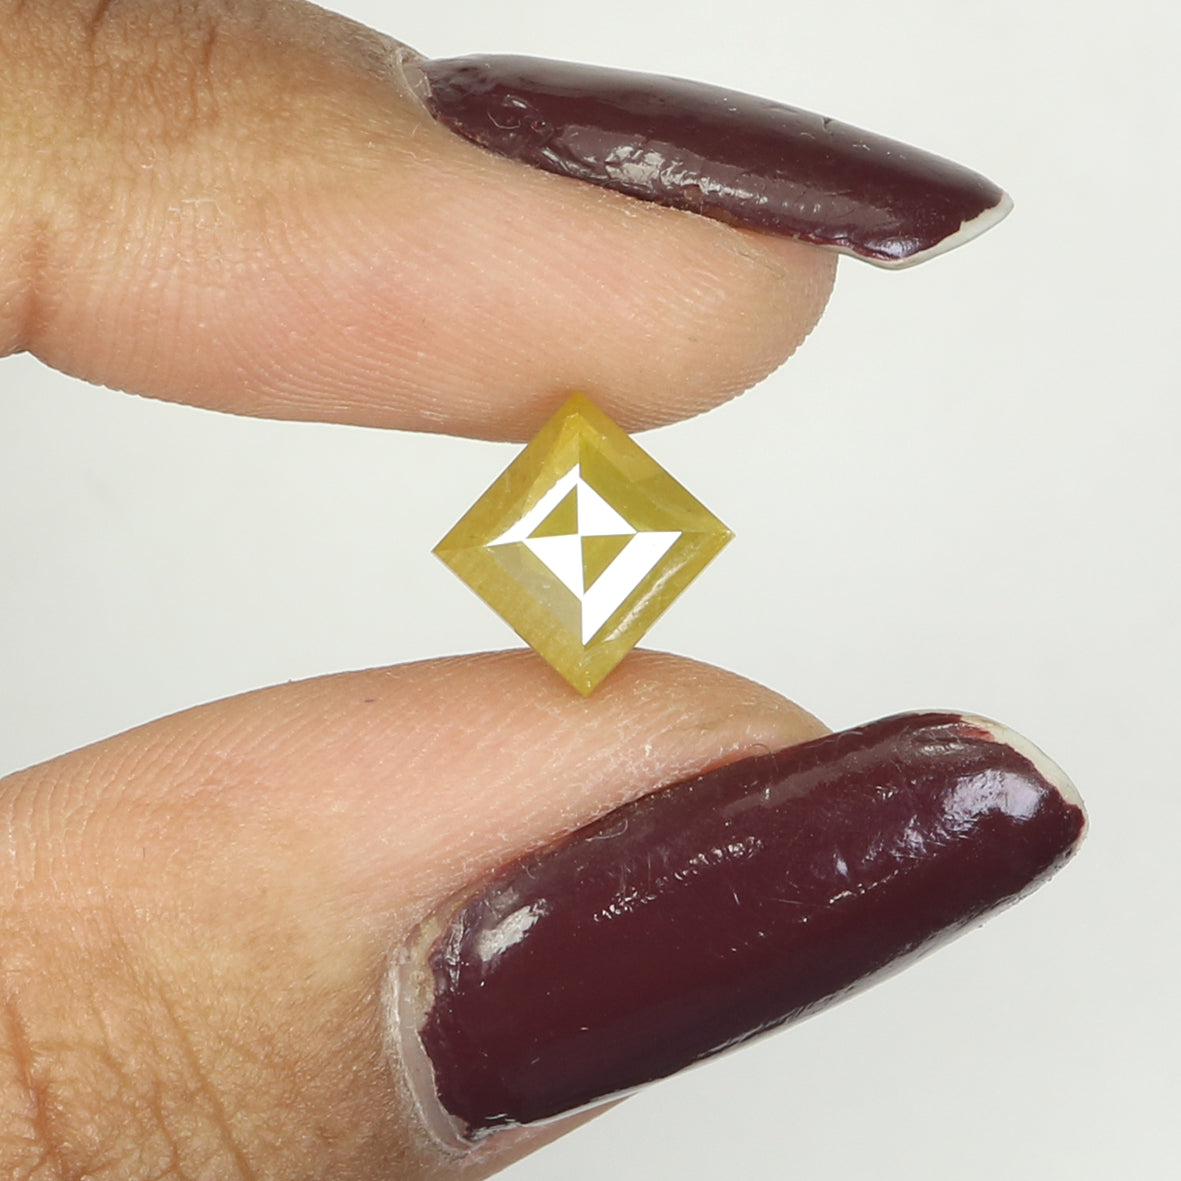 1.53 Ct Natural Loose Diamond, Kite Diamond, Yellow Diamond, Antique Diamond, Kite Cut Diamond, Rustic Diamond, Real Diamond KDL9760